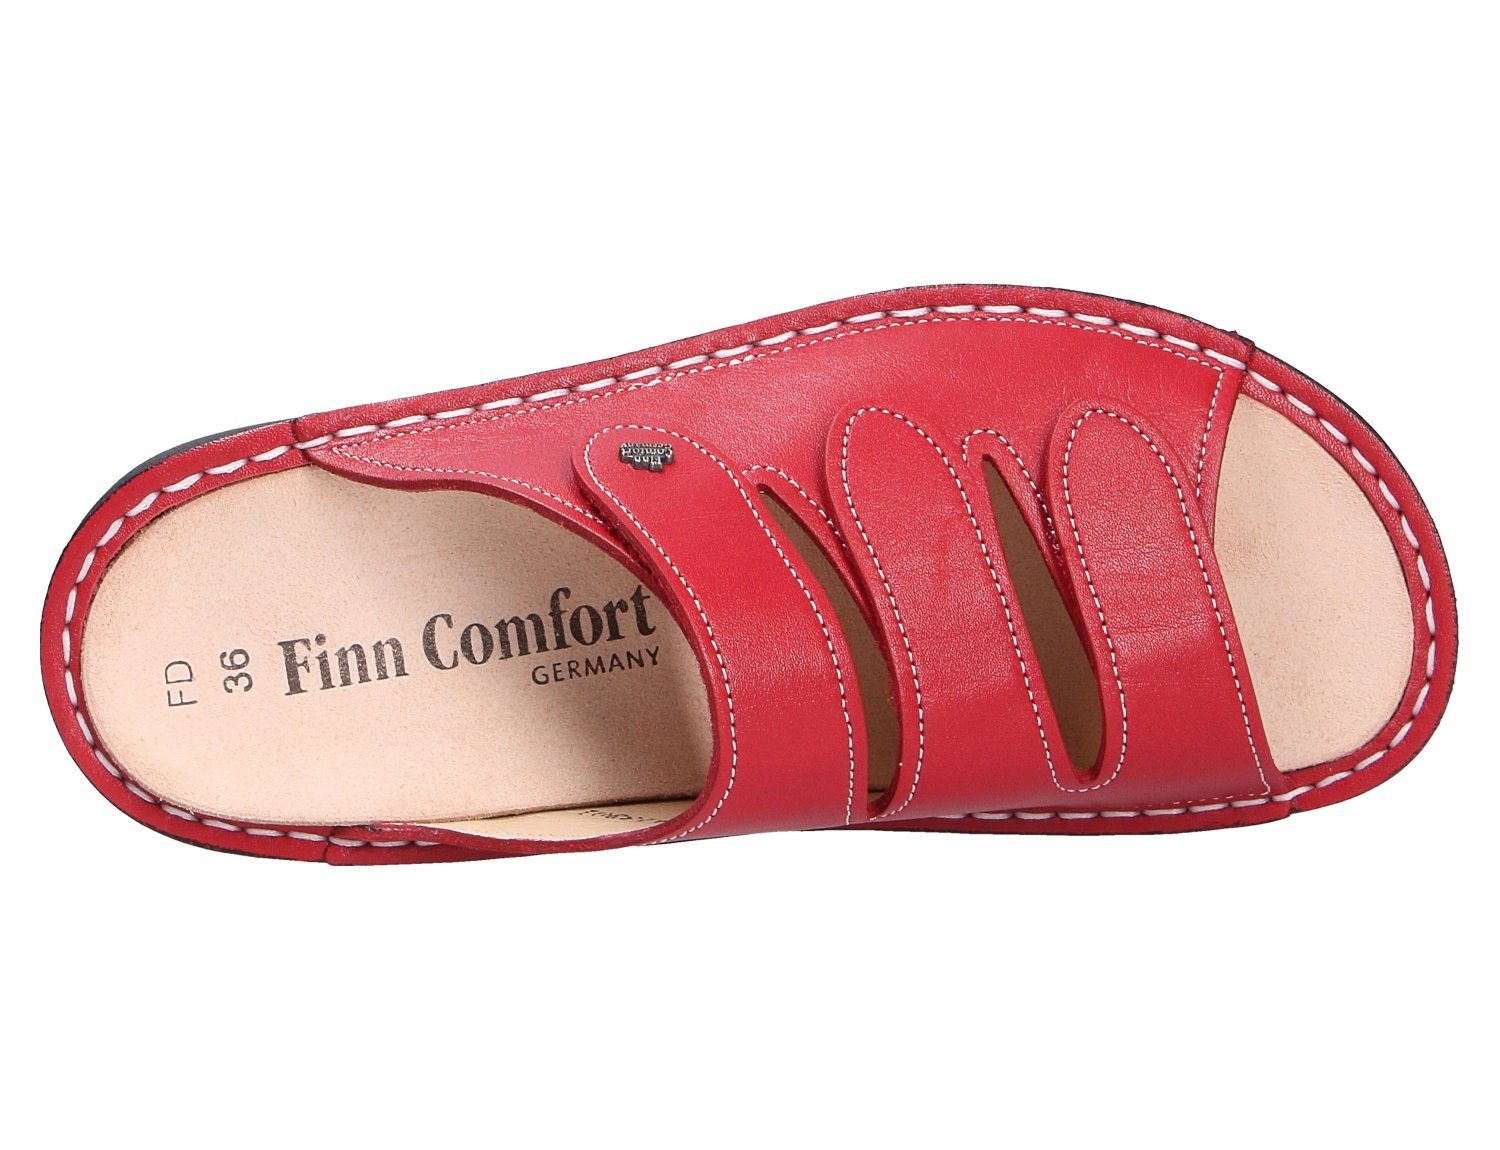 Pantolette Finn Comfort Weicher Gehcomfort